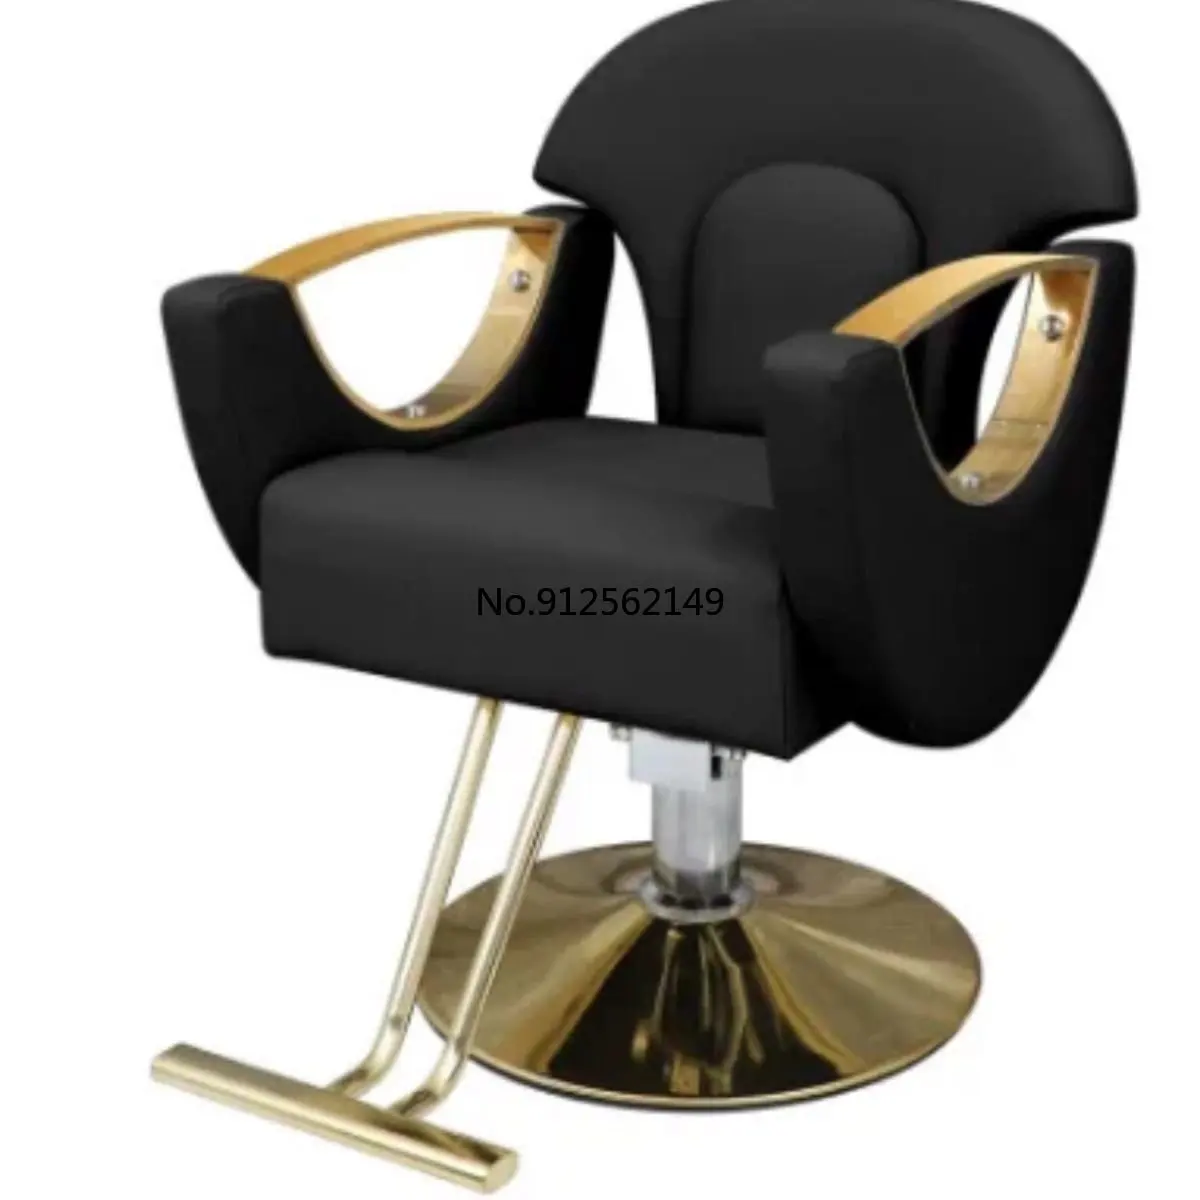 Hair salon chair barber shop modern style hair cutting chair swivel liftable hairdressing salon chairs hair salon furniture